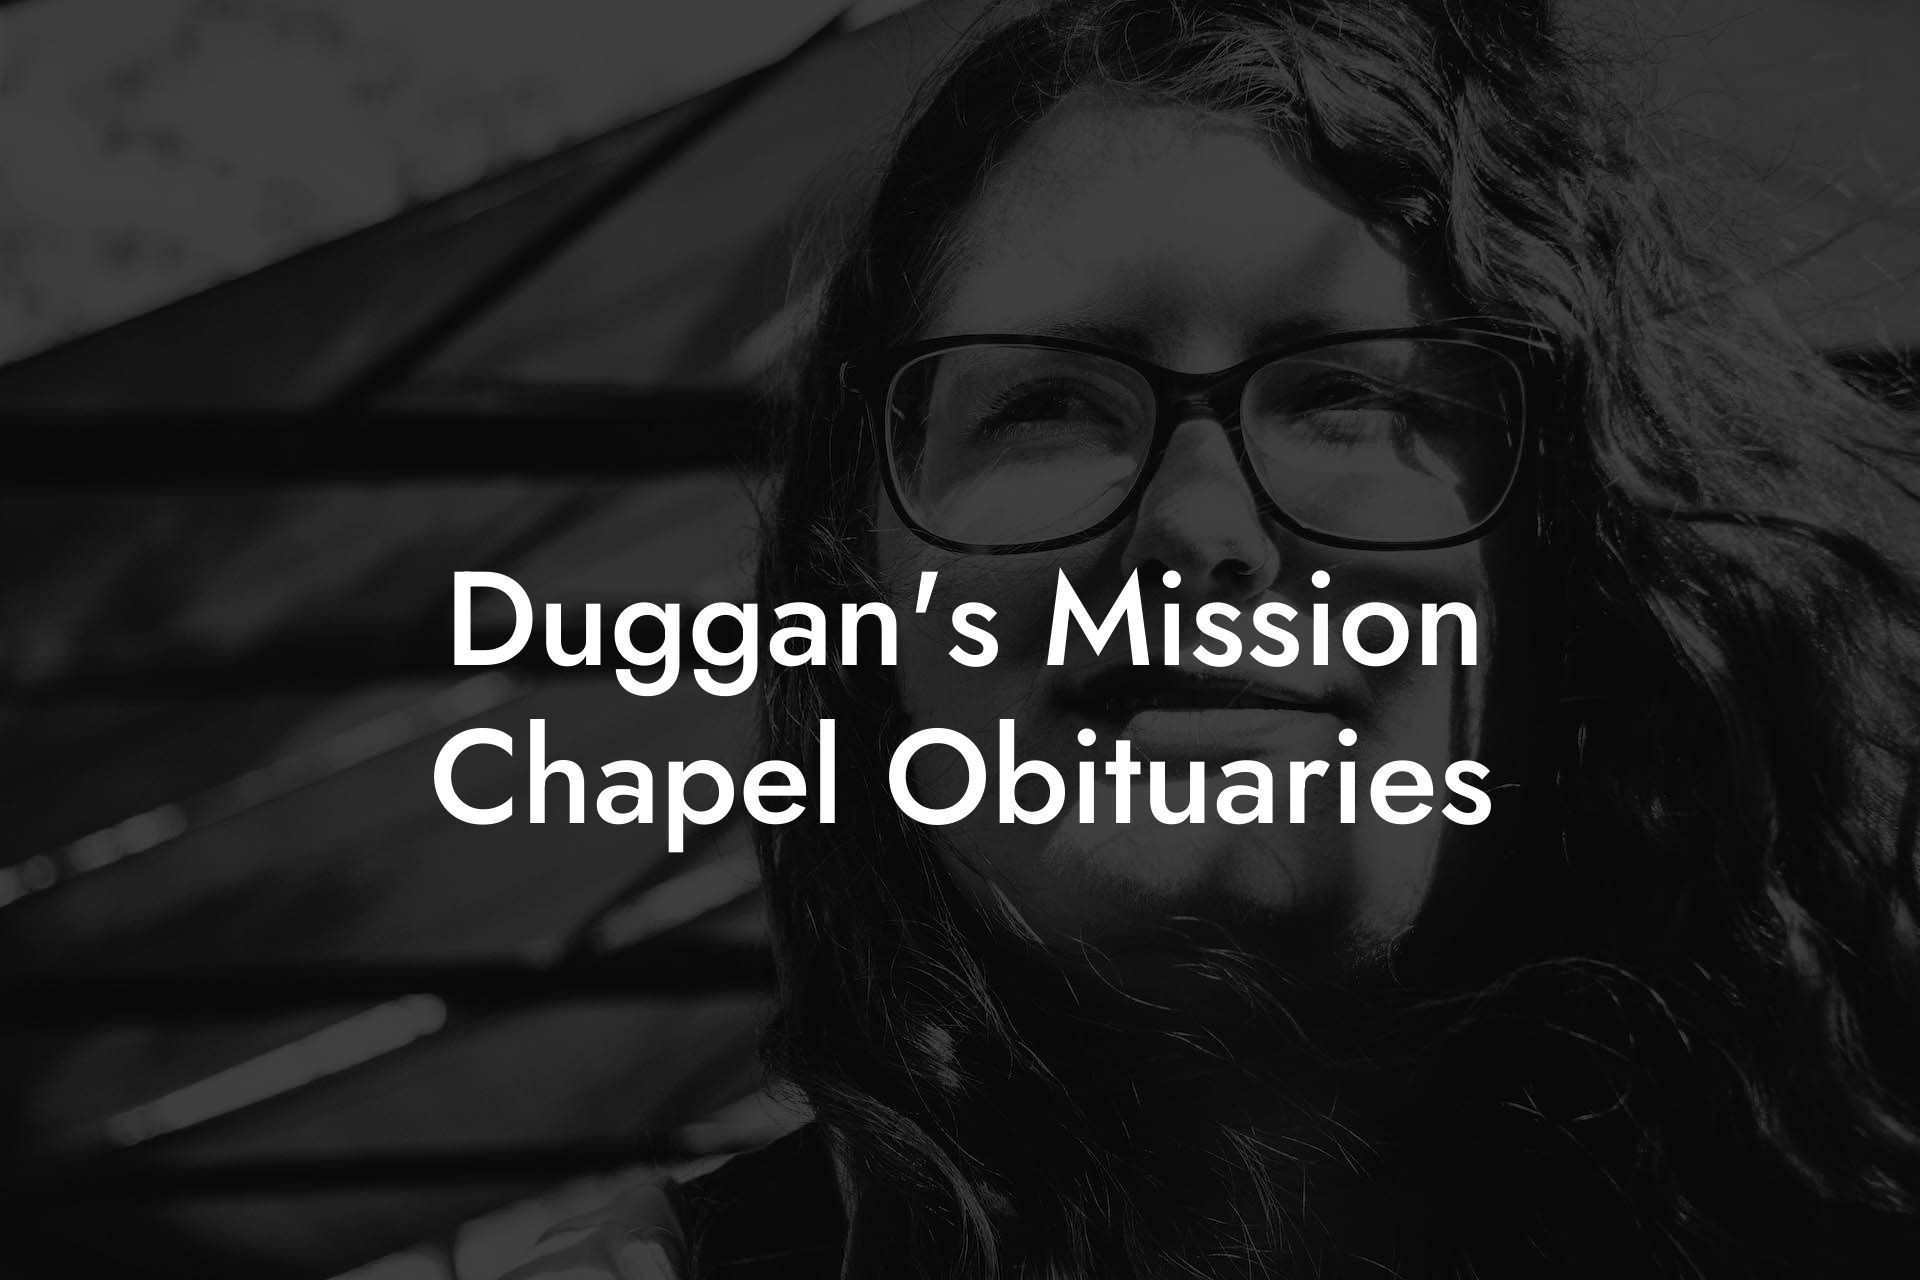 Duggan's Mission Chapel Obituaries